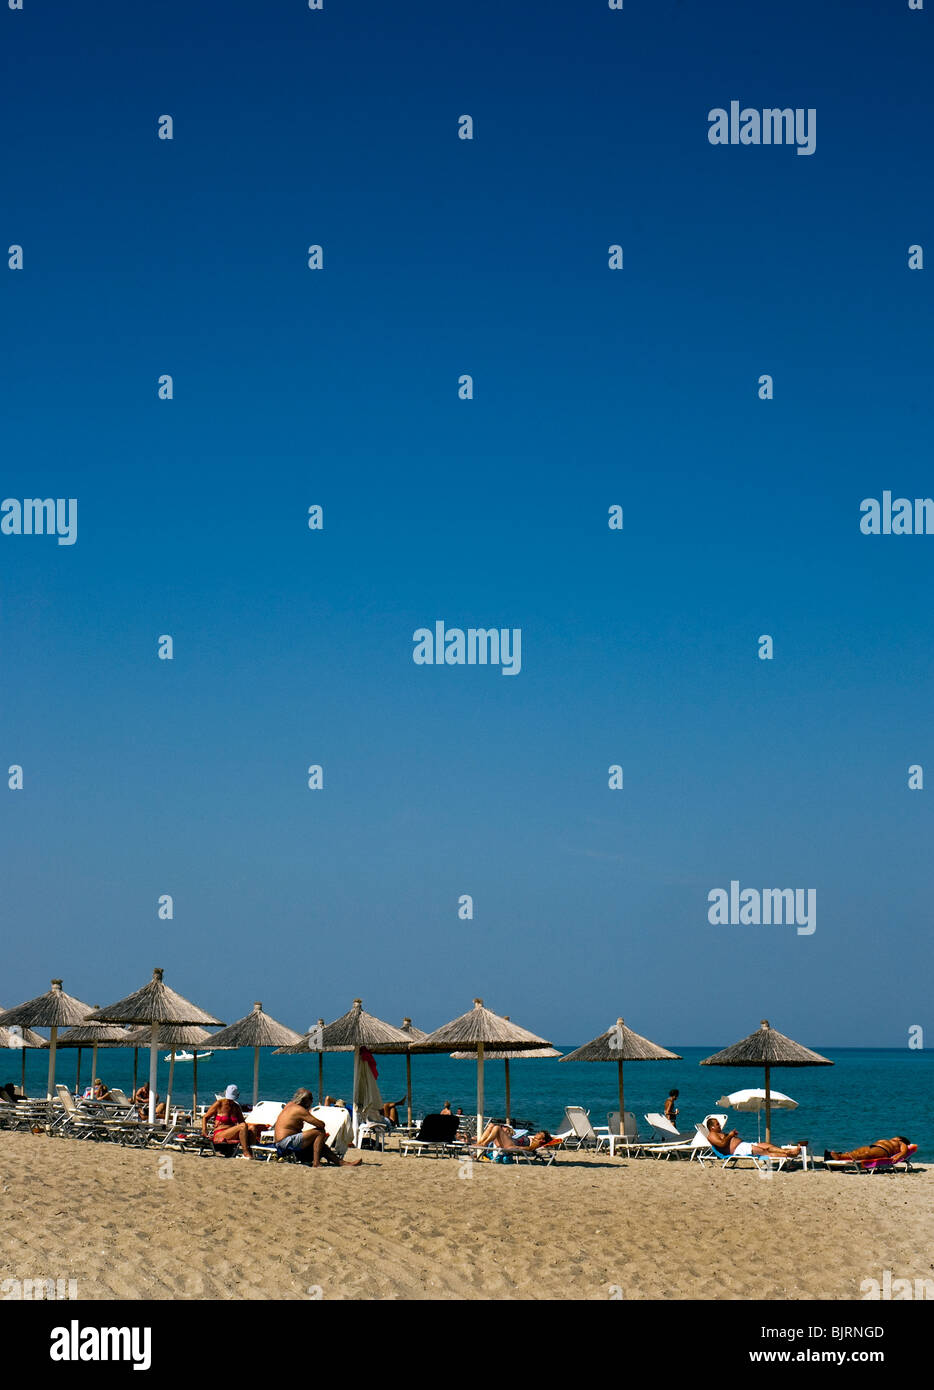 Hanioti Beach, Halkidiki Greece. Stock Photo